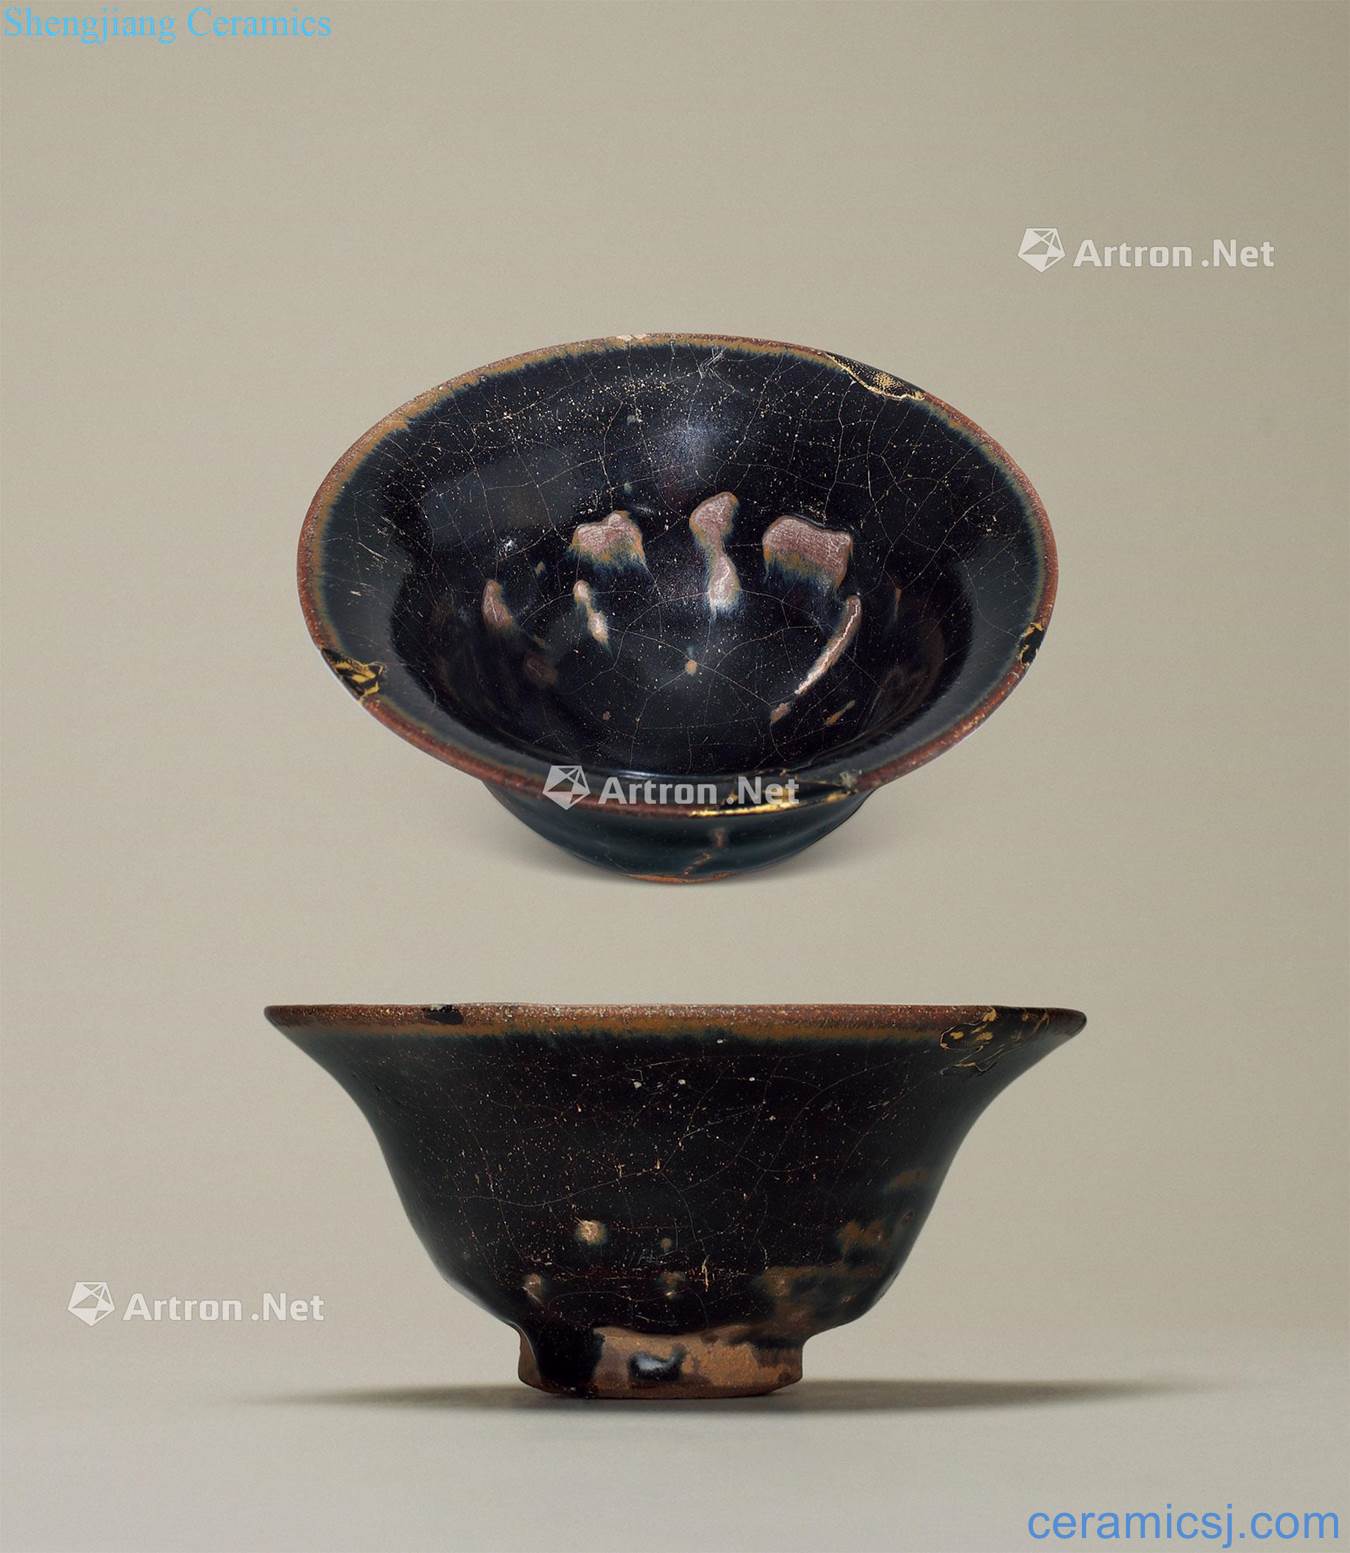 Wang Shan Ming or before Gold and repair repair built lamp (a set of two)